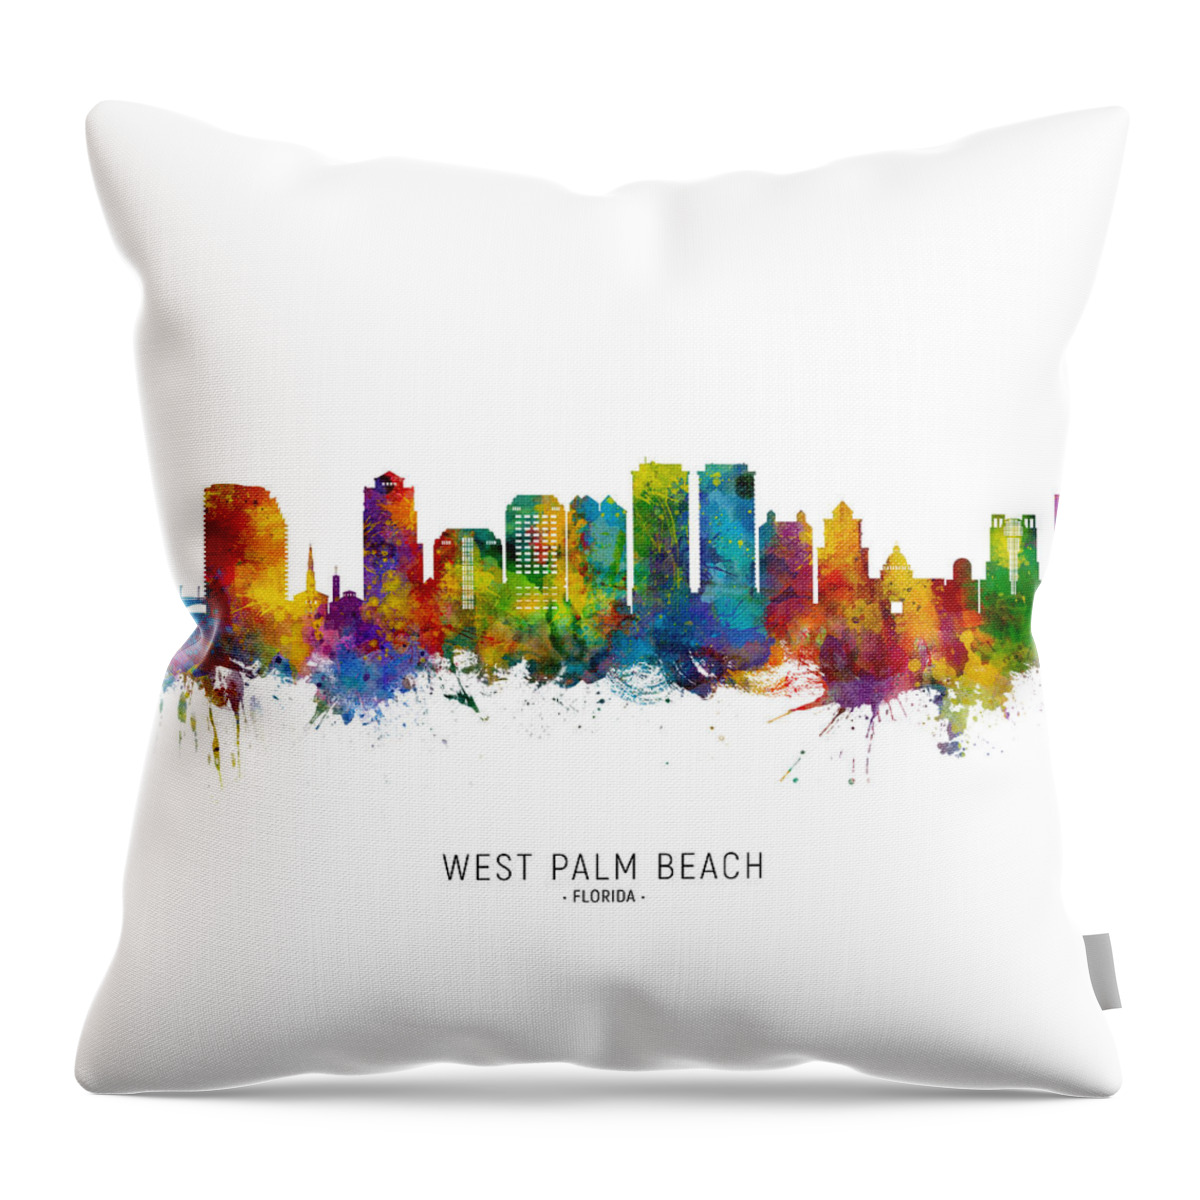 West Palm Beach Throw Pillow featuring the digital art West Palm Beach Florida Skyline by Michael Tompsett